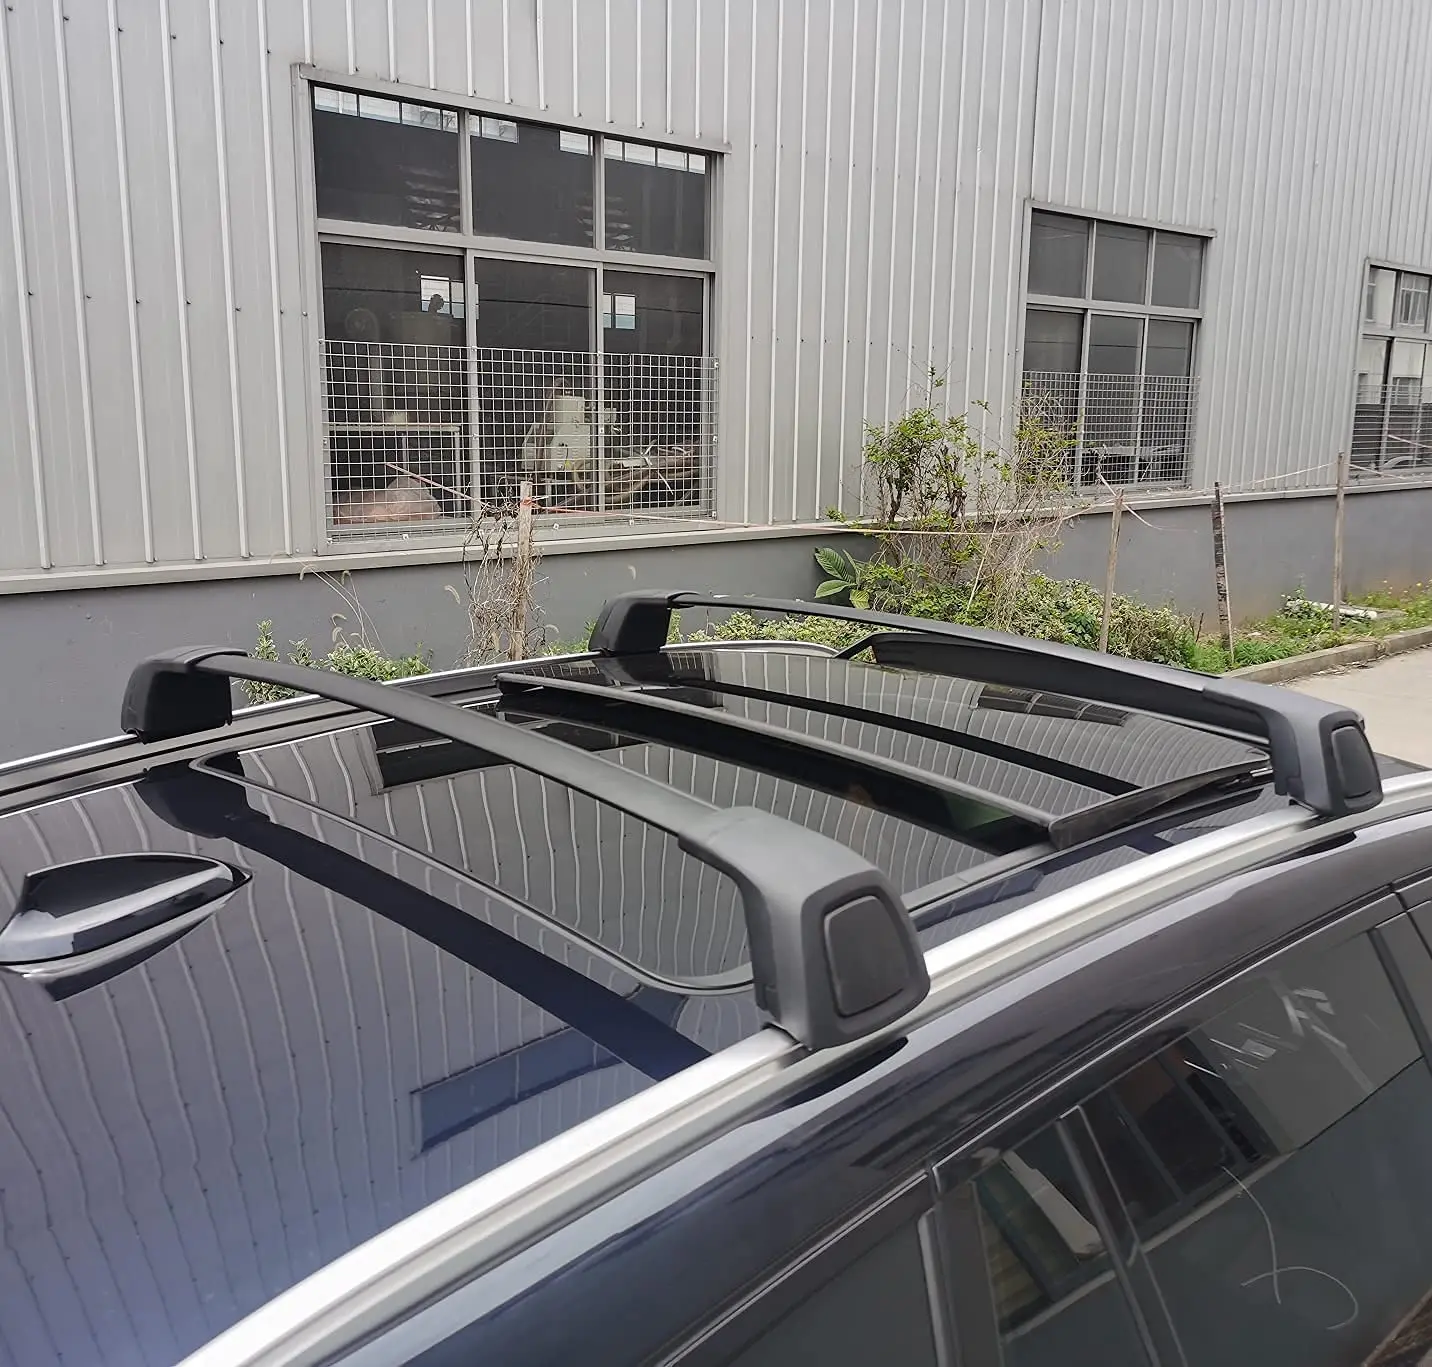 Barre de toit personnalisée pour BMW X5 2019-2023, porte-bagages, barre  transversale, porte-bagages, style OE - AliExpress